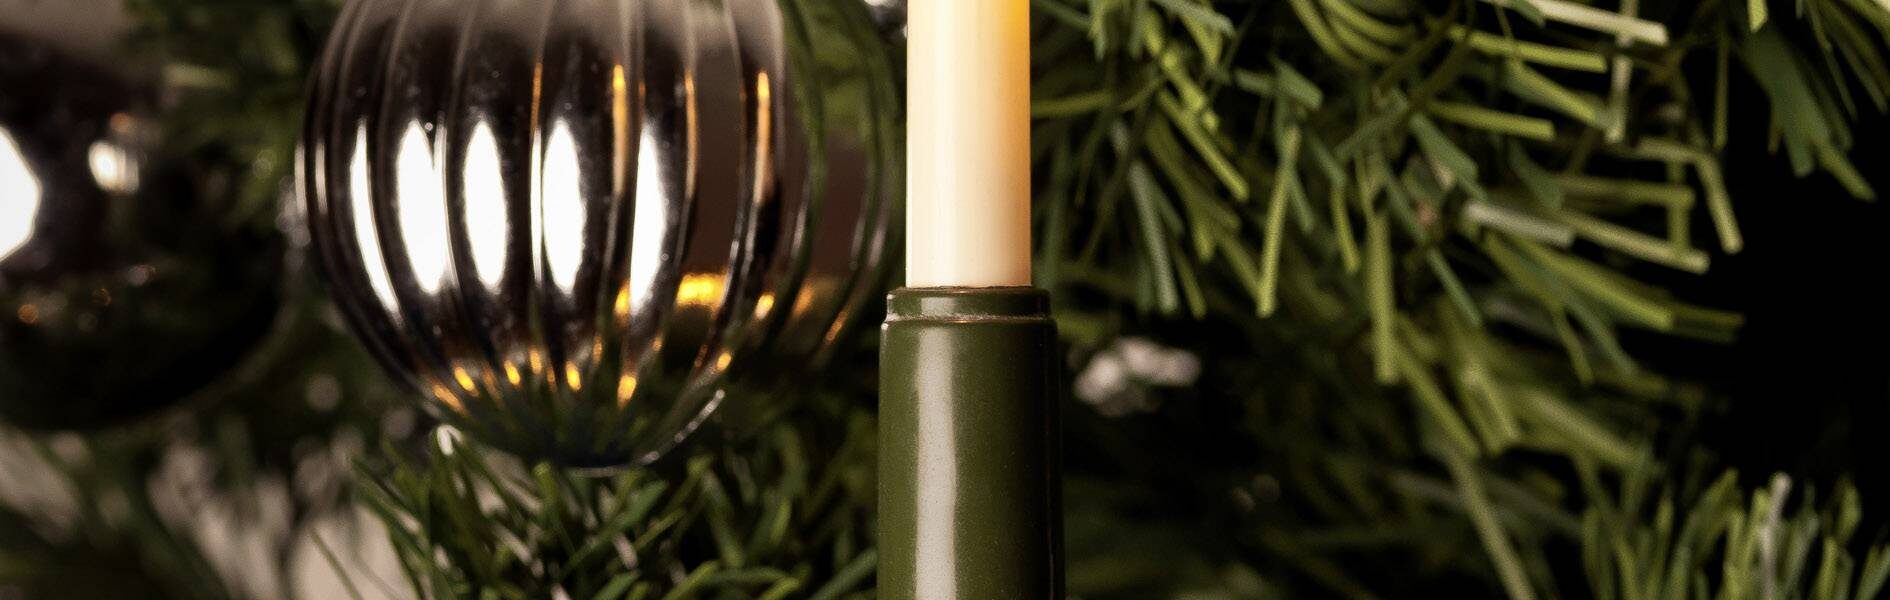 LED osvetlenie na vianočný stromček Konstsmide 1120-020, vnútorné 1120-020, 230 V, 12 m